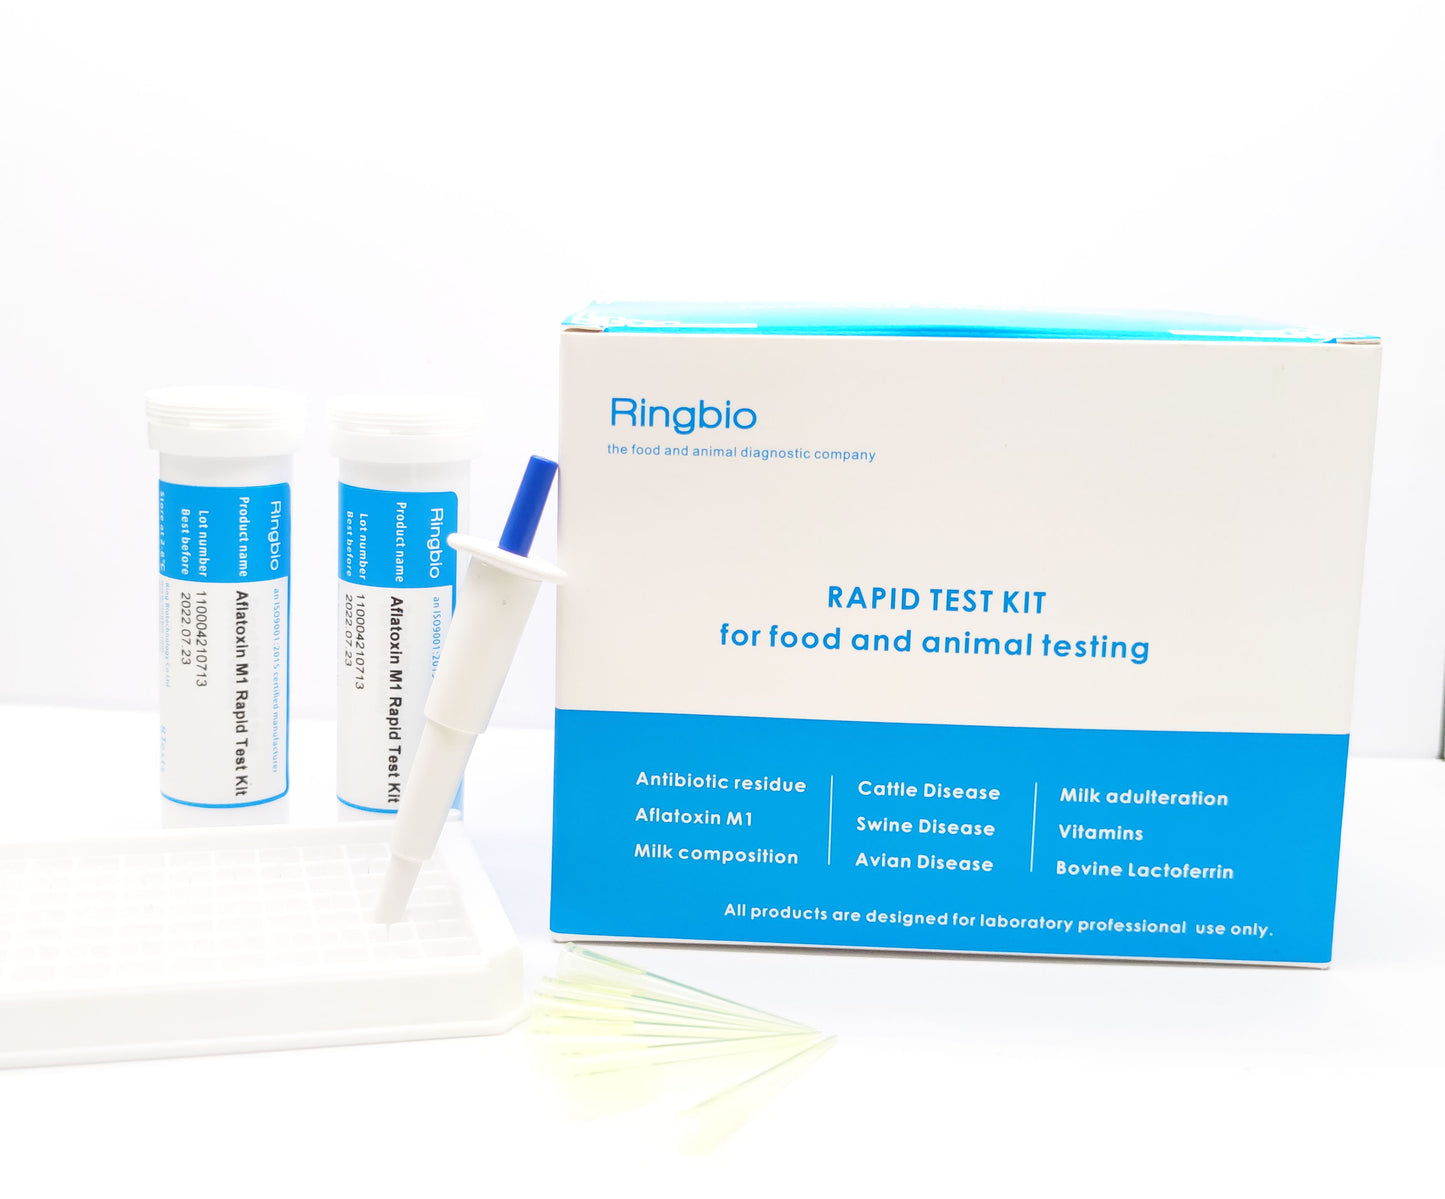 Aflatoxin M1 Rapid Test Kit - detection limit 0.5ppb